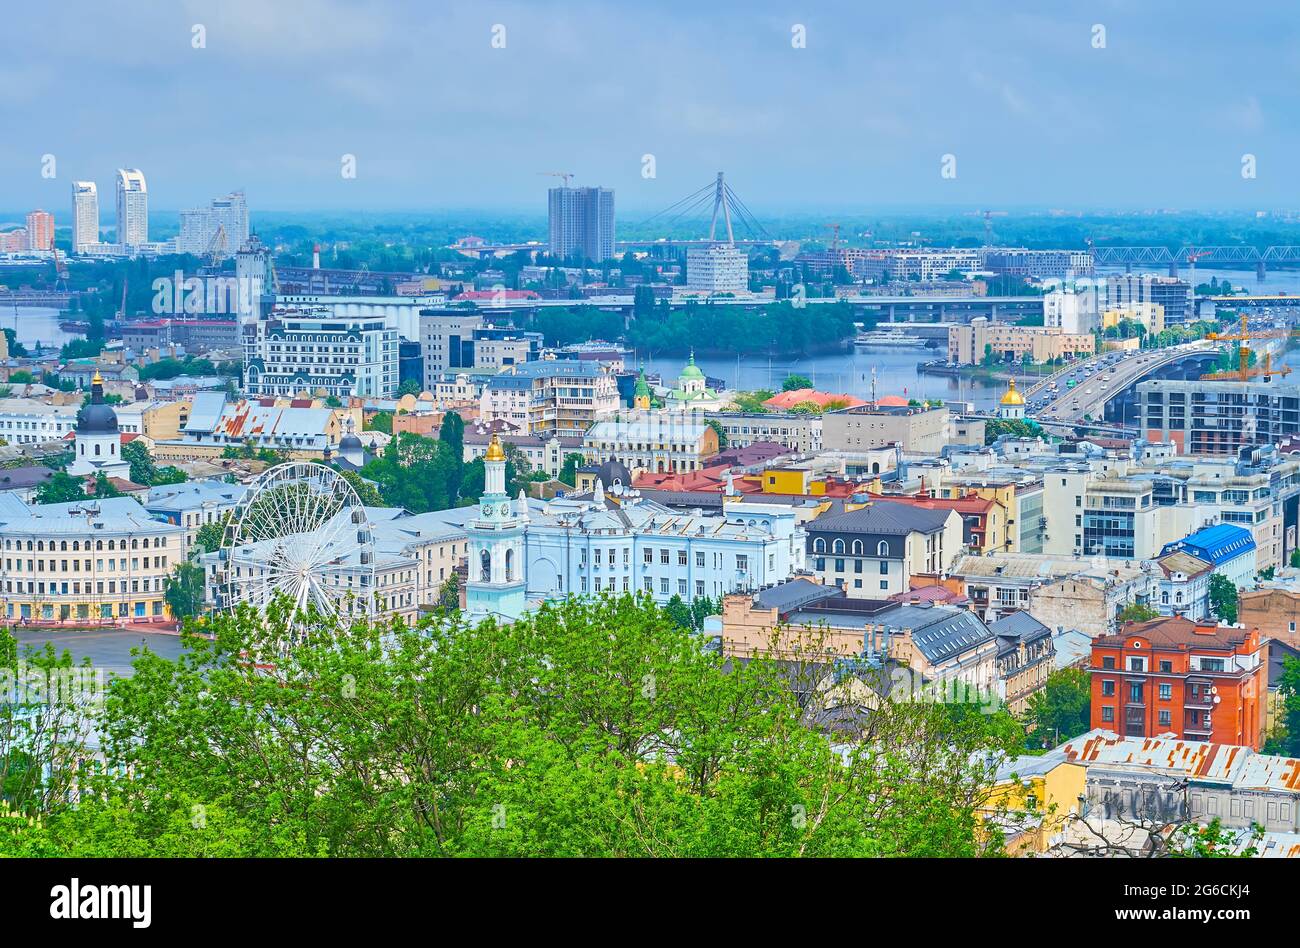 Die Dächer des historischen Podil-Viertels, das Riesenrad, der Dnjepr-Fluss und die Nordbrücke am Horizont, Kiew, Ukraine Stockfoto